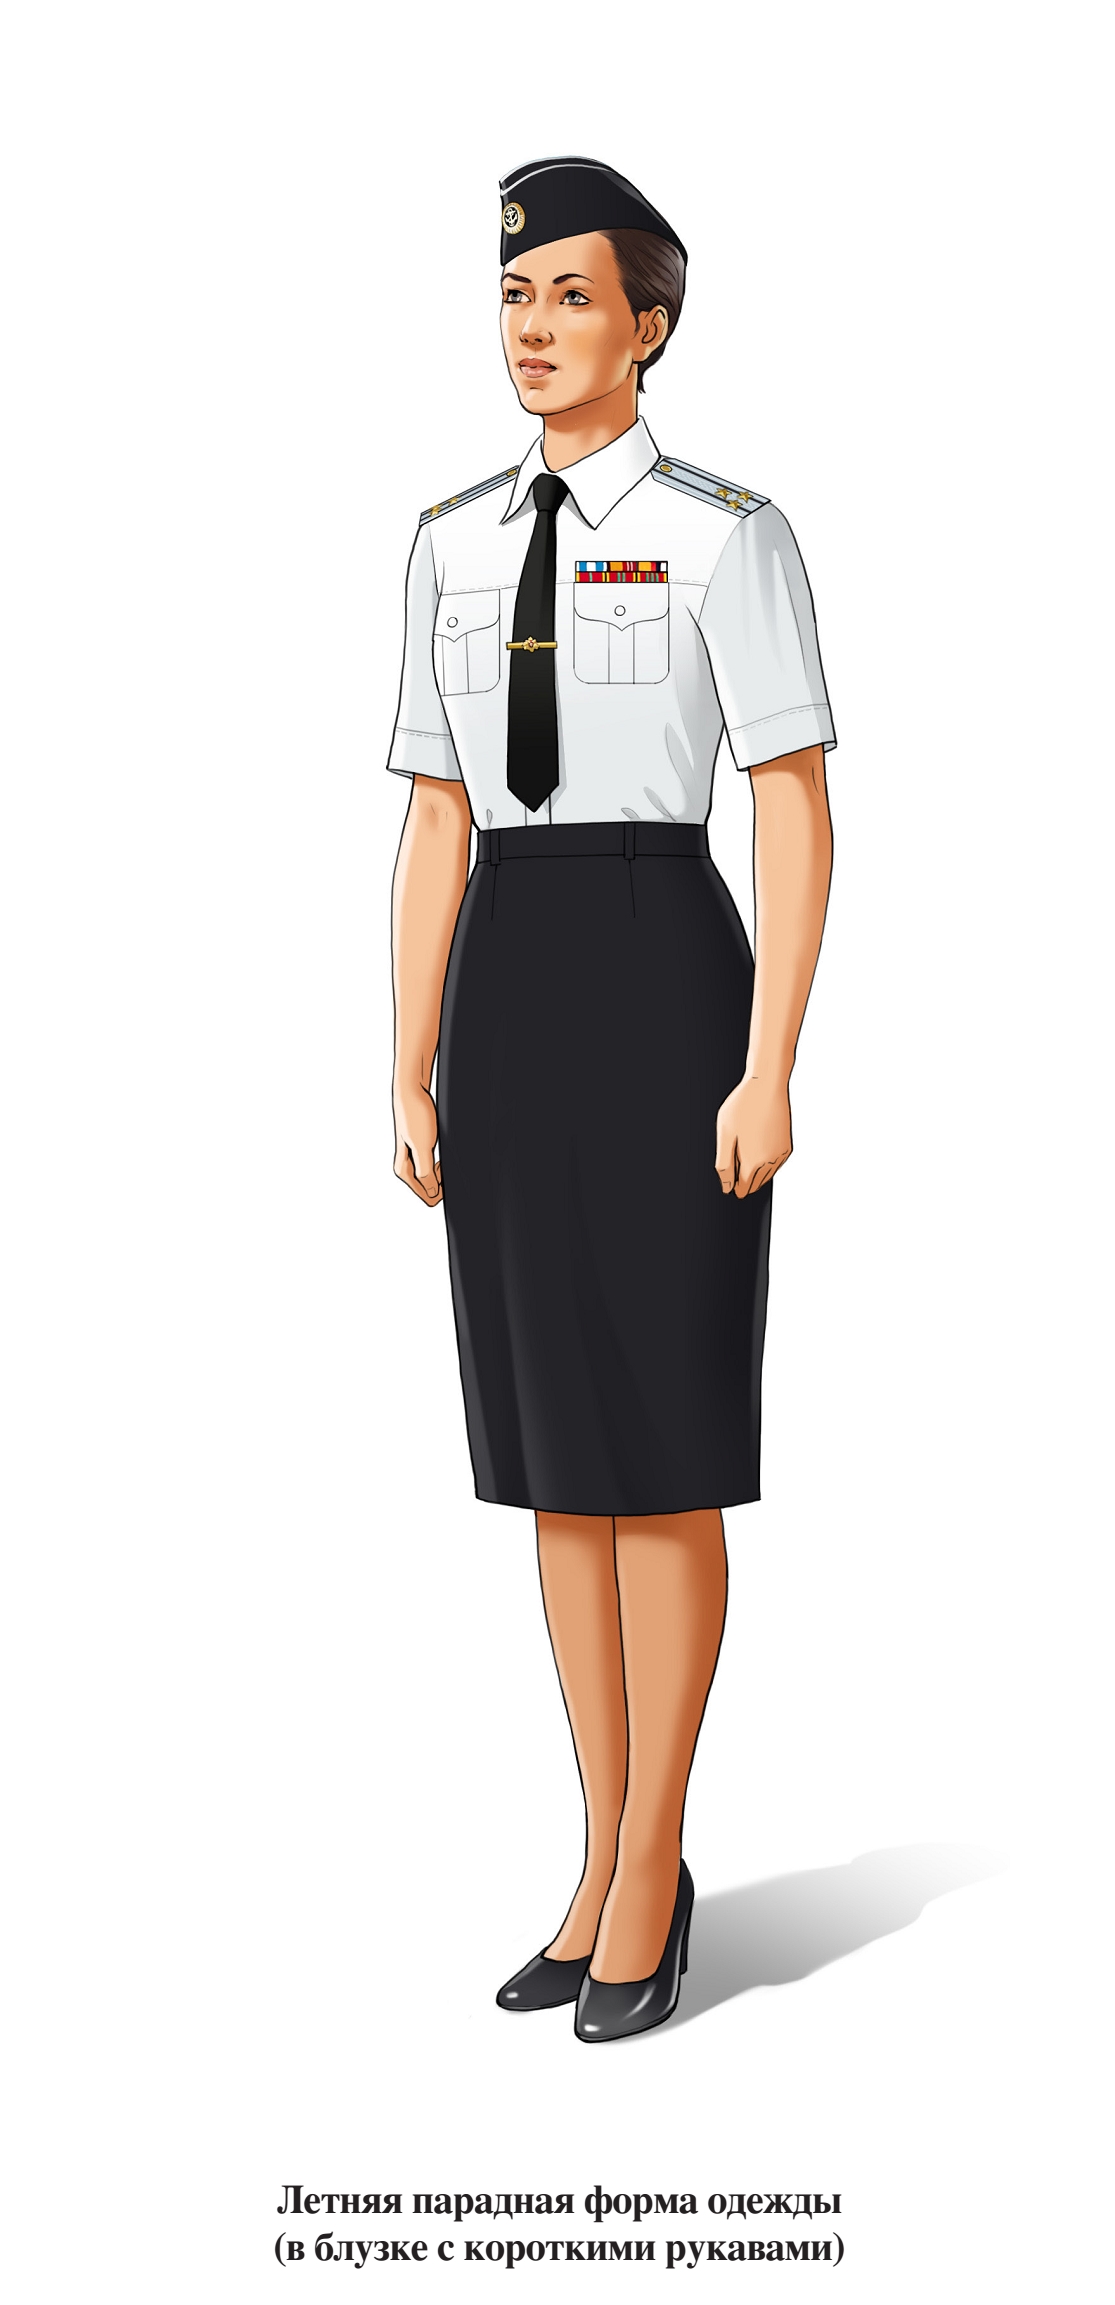 Летняя парадная форма военнослужащих женского пола ВМФ, в юбке и блузке с коротким рукавом